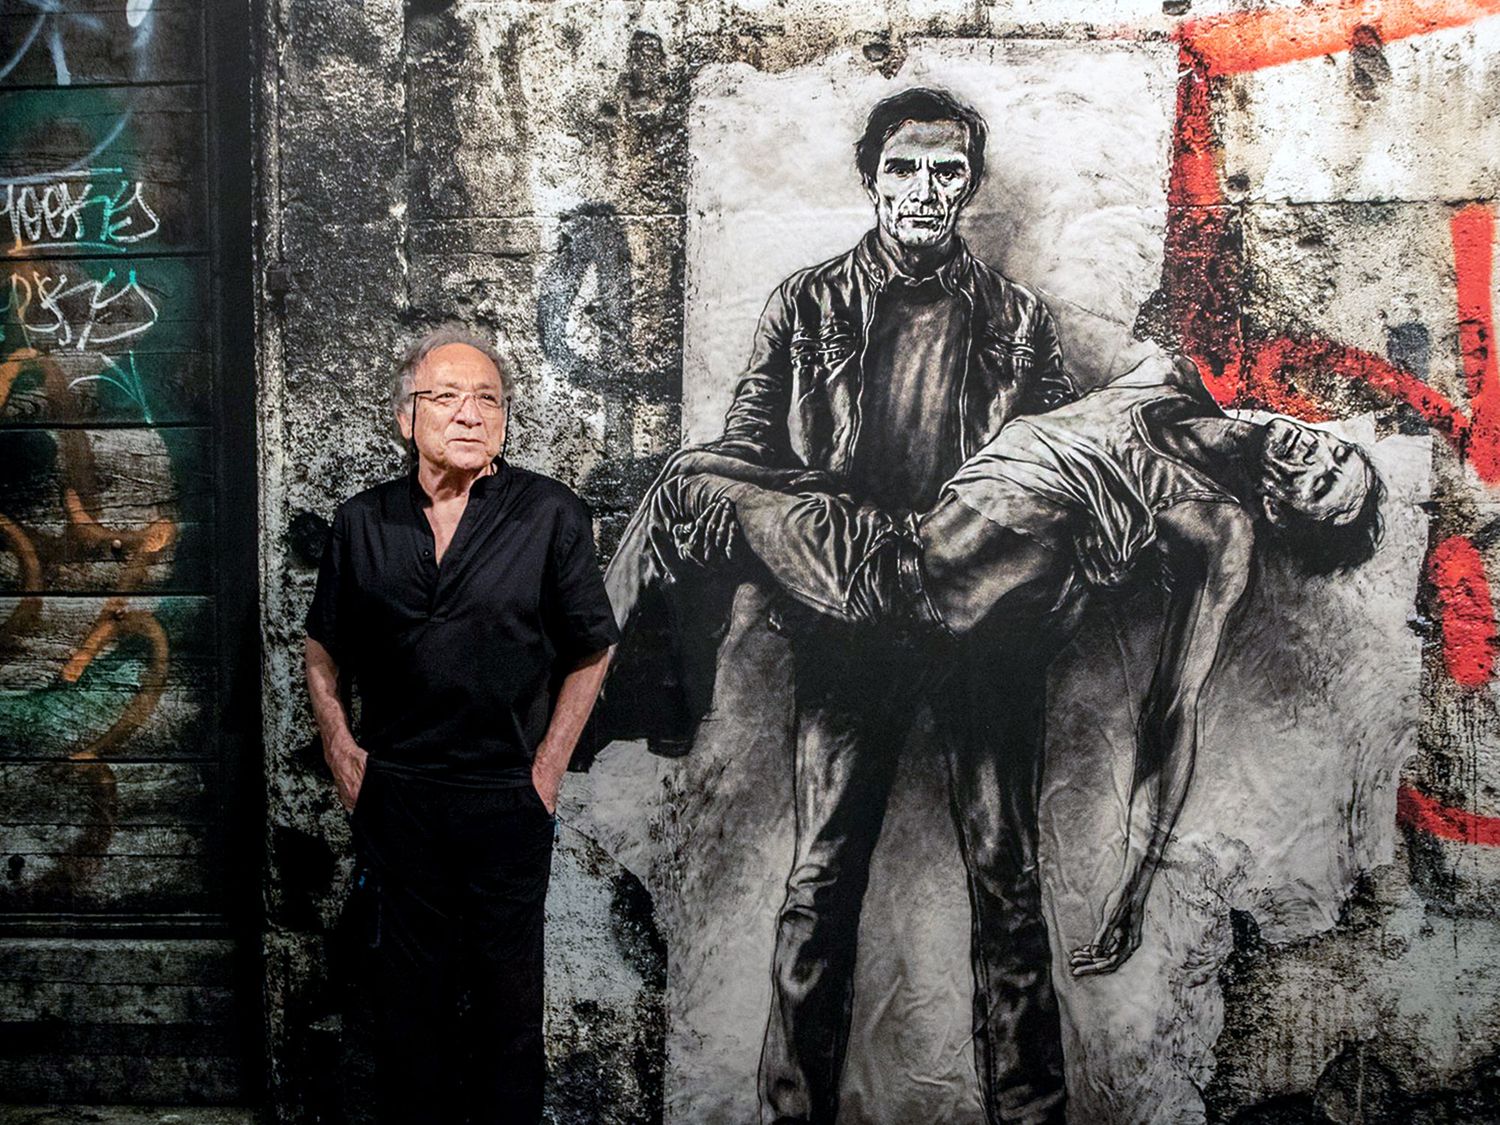 Ernest Pignon-Ernest à côté de son portrait historique de Pasolini durant l’exposition “Ecce Homo” à Avignon (2019-2020) qui célébra plus de 50 ans d’expression artistique (©MAXPPP).